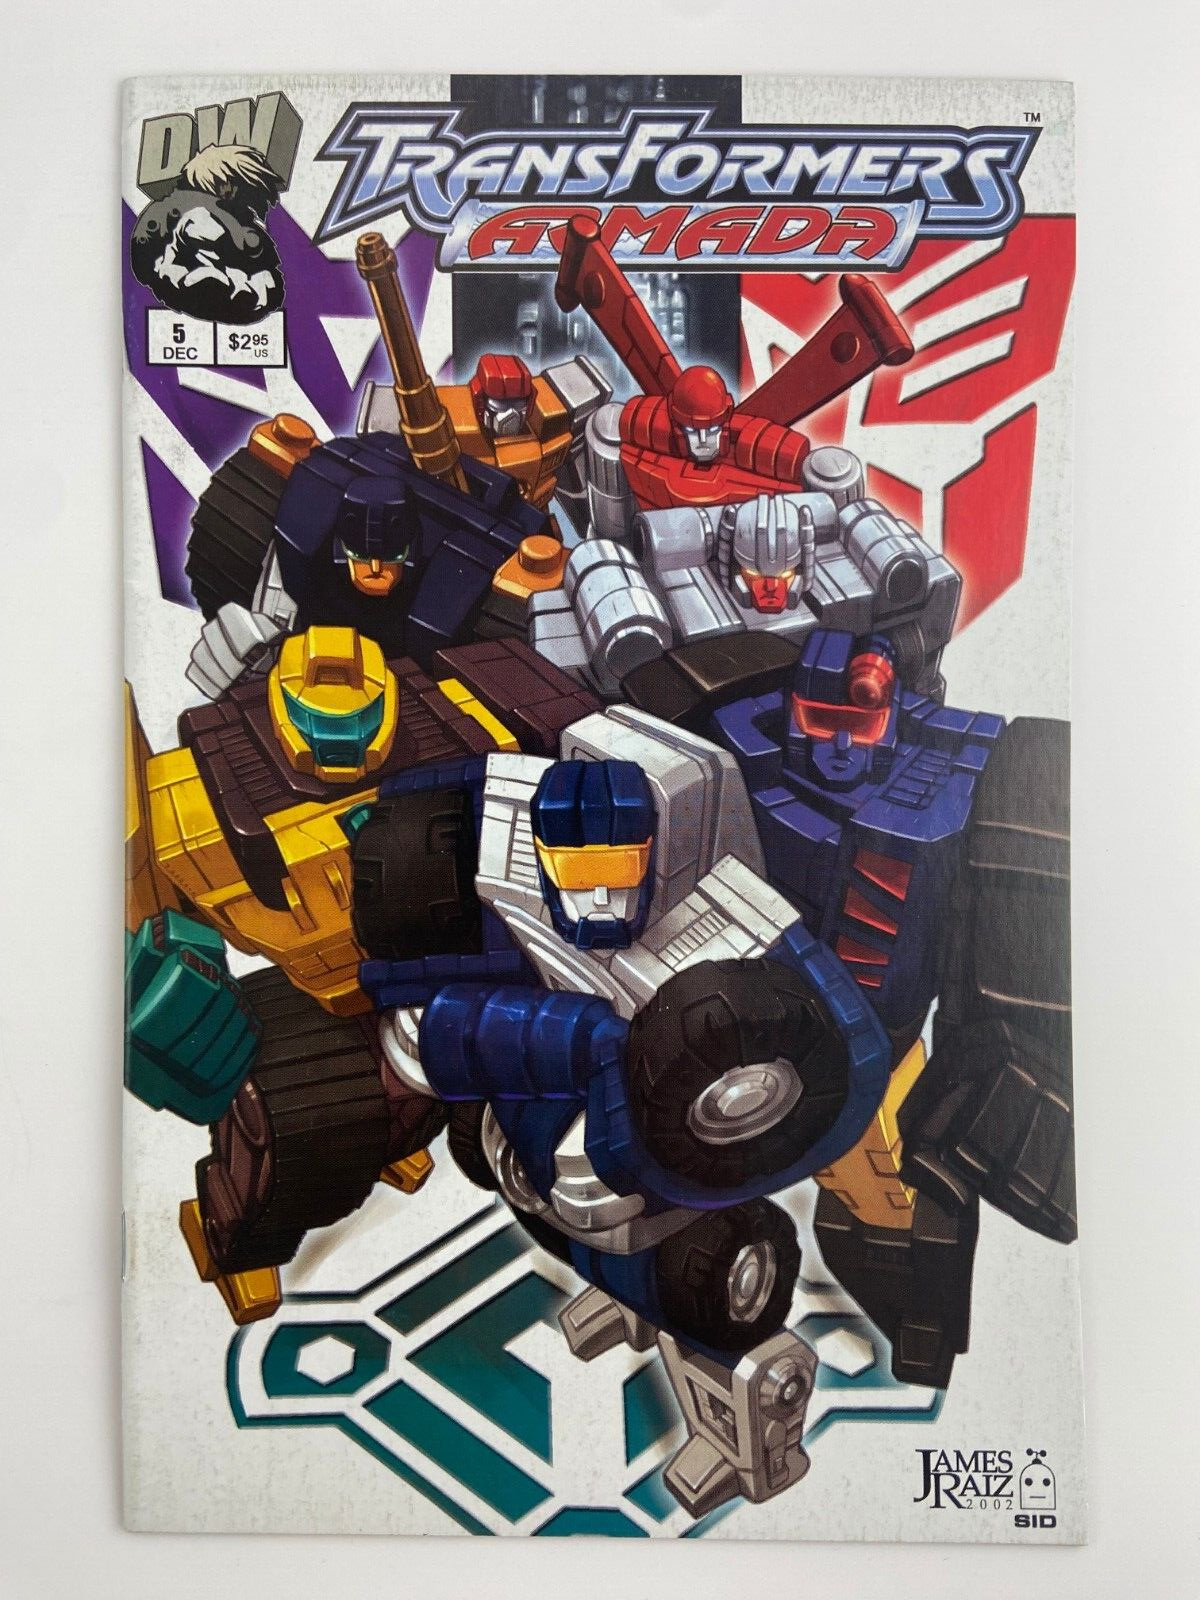 Transformers Armada #5 (2002) DW Comics c